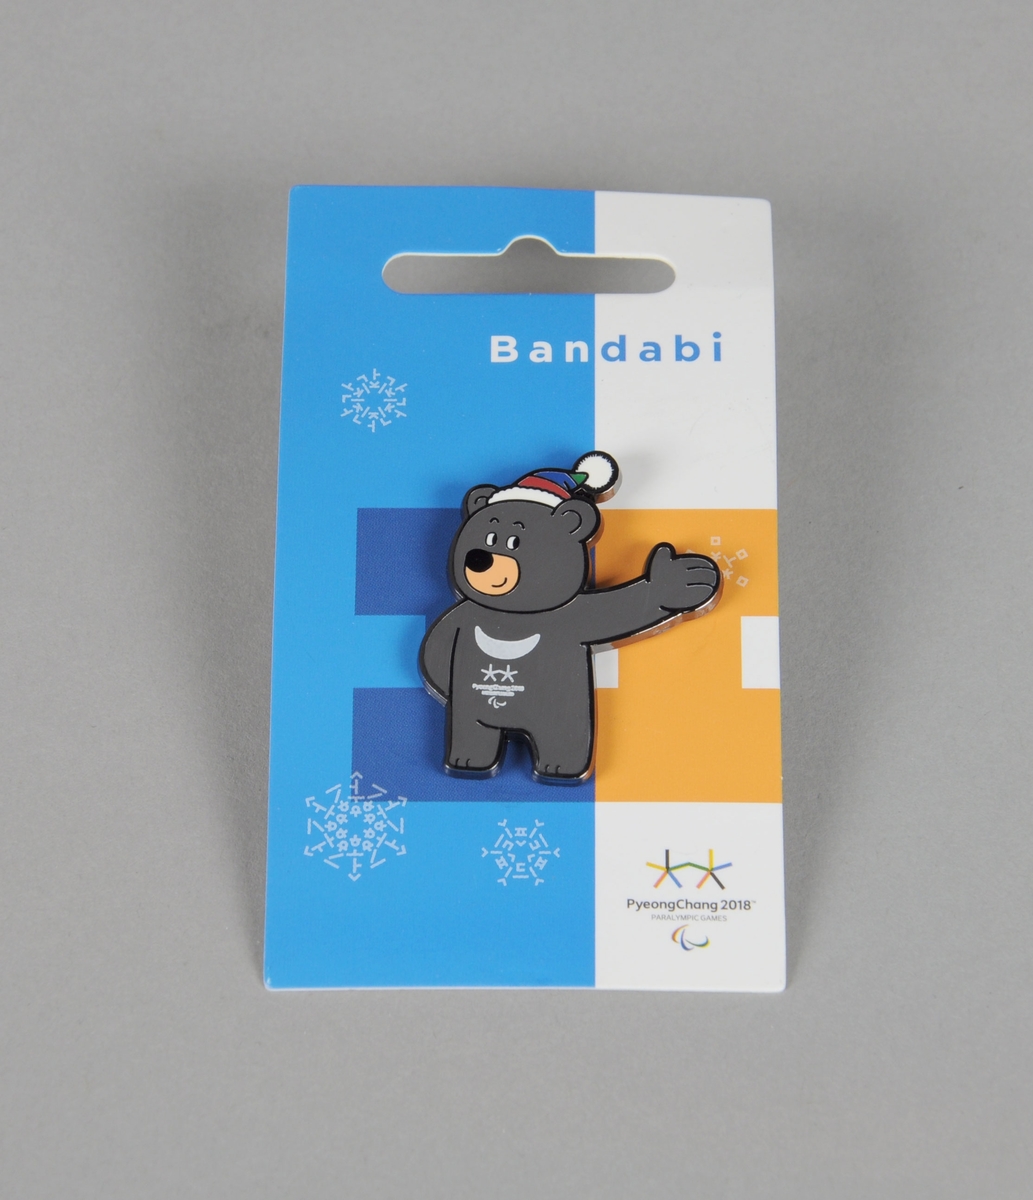 Jakkemerke formet som maskoten Bandabi med emblemet for vinter-Paralympics i PyeongChang 2018. Merket ligger i orgiginal emballasje merket navnet på maskoten og embelet for Paralympics. På baksiden av emballasjen er det et hologram med emblemet for lekene med et unikt nummer